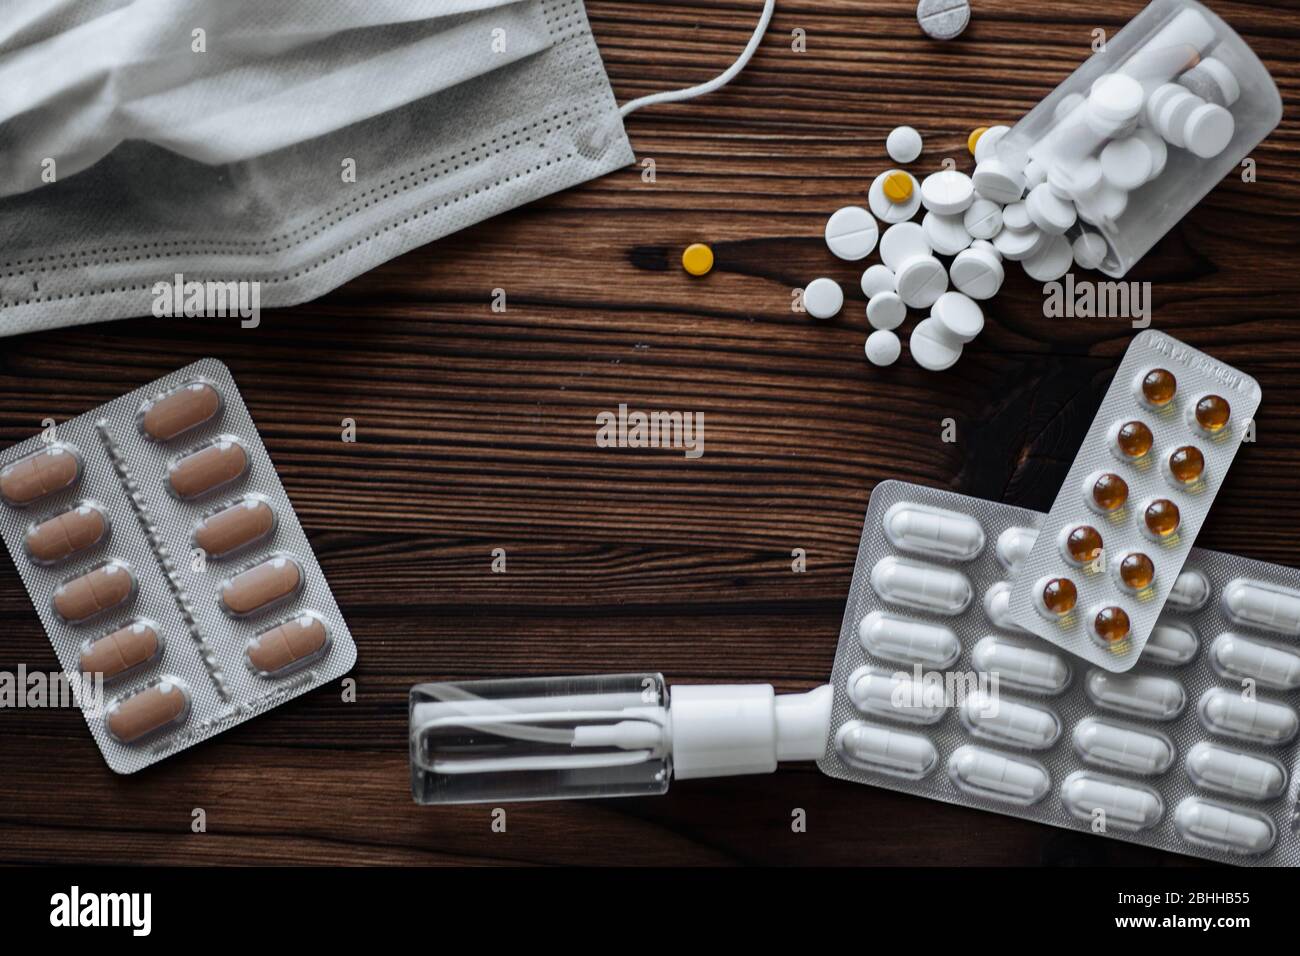 Maschera medica protettiva, pillole e gel antisettico per le mani su fondo in legno. Concetto di medicina, quarantena. Foto Stock